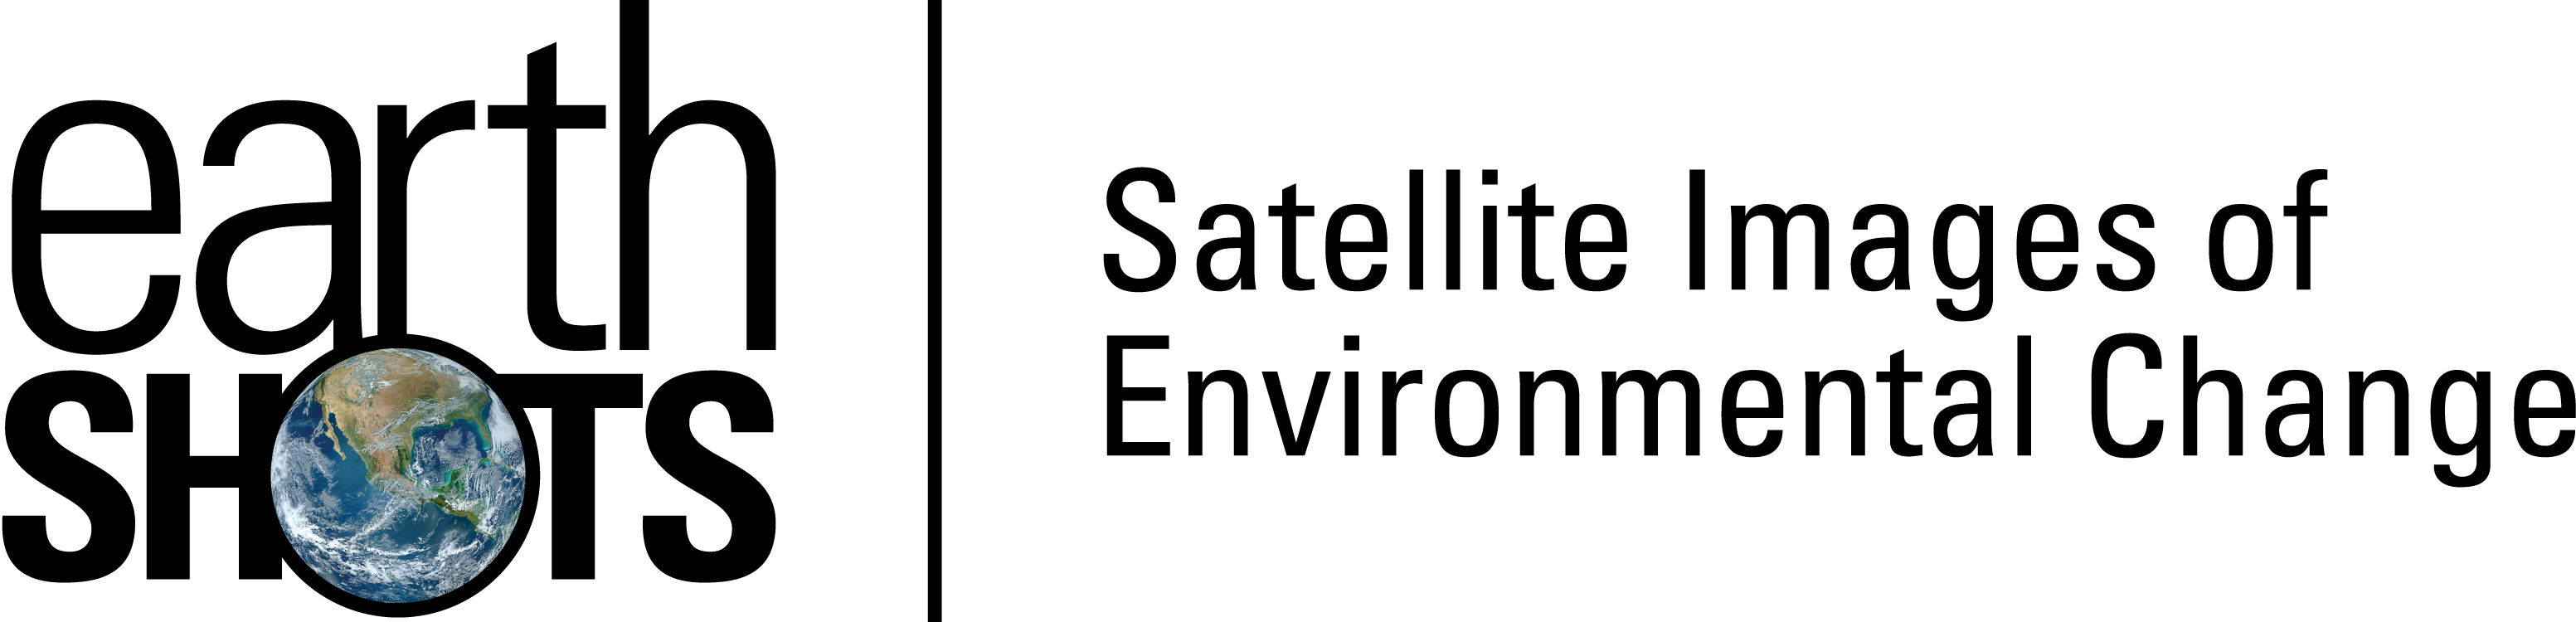 Earth Shots logo